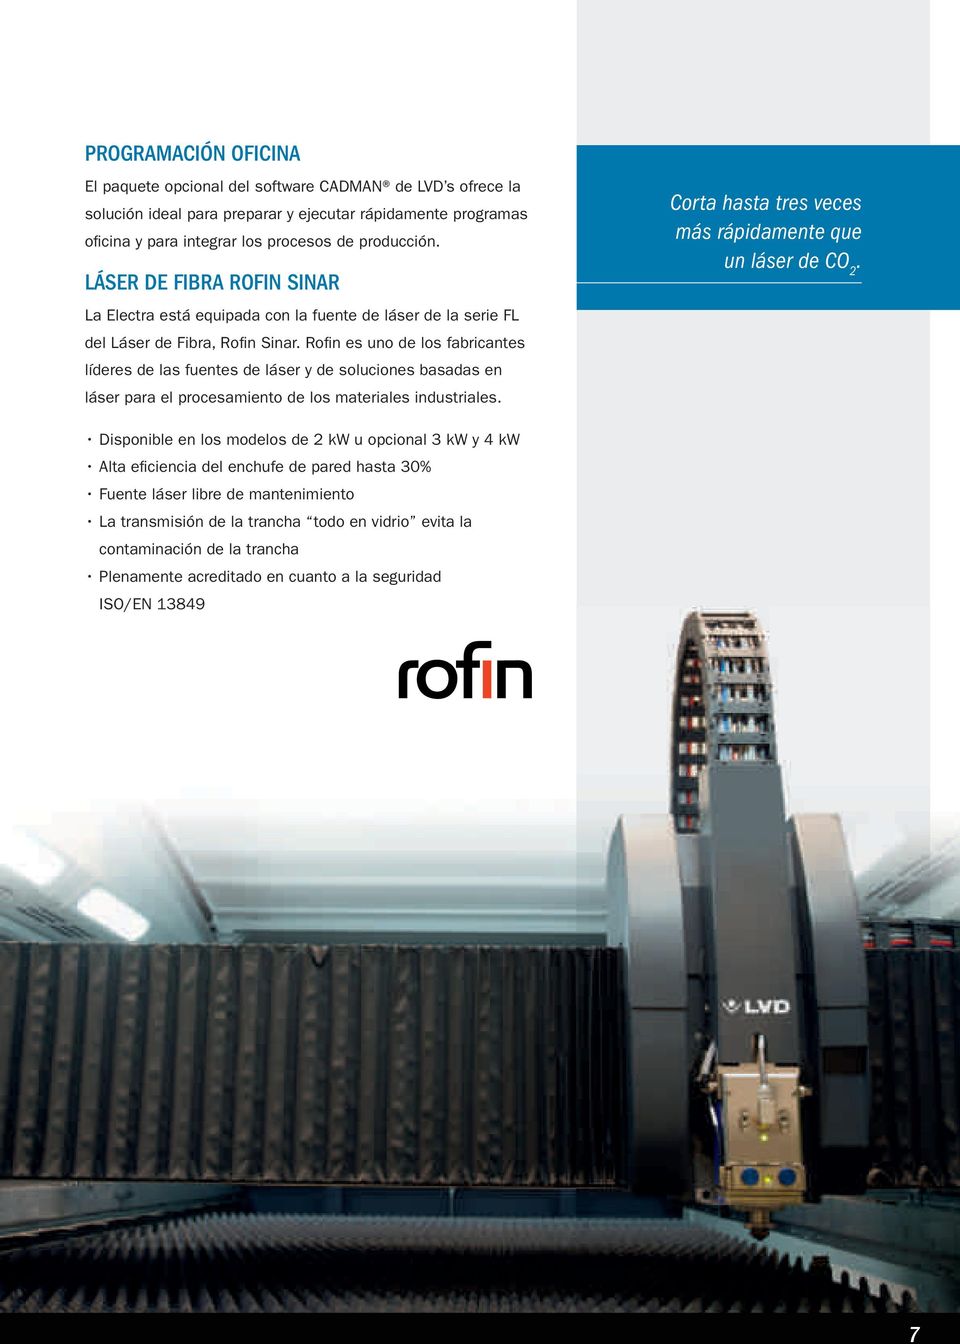 Rofi n es uno de los fabricantes líderes de las fuentes de láser y de soluciones basadas en láser para el procesamiento de los materiales industriales.